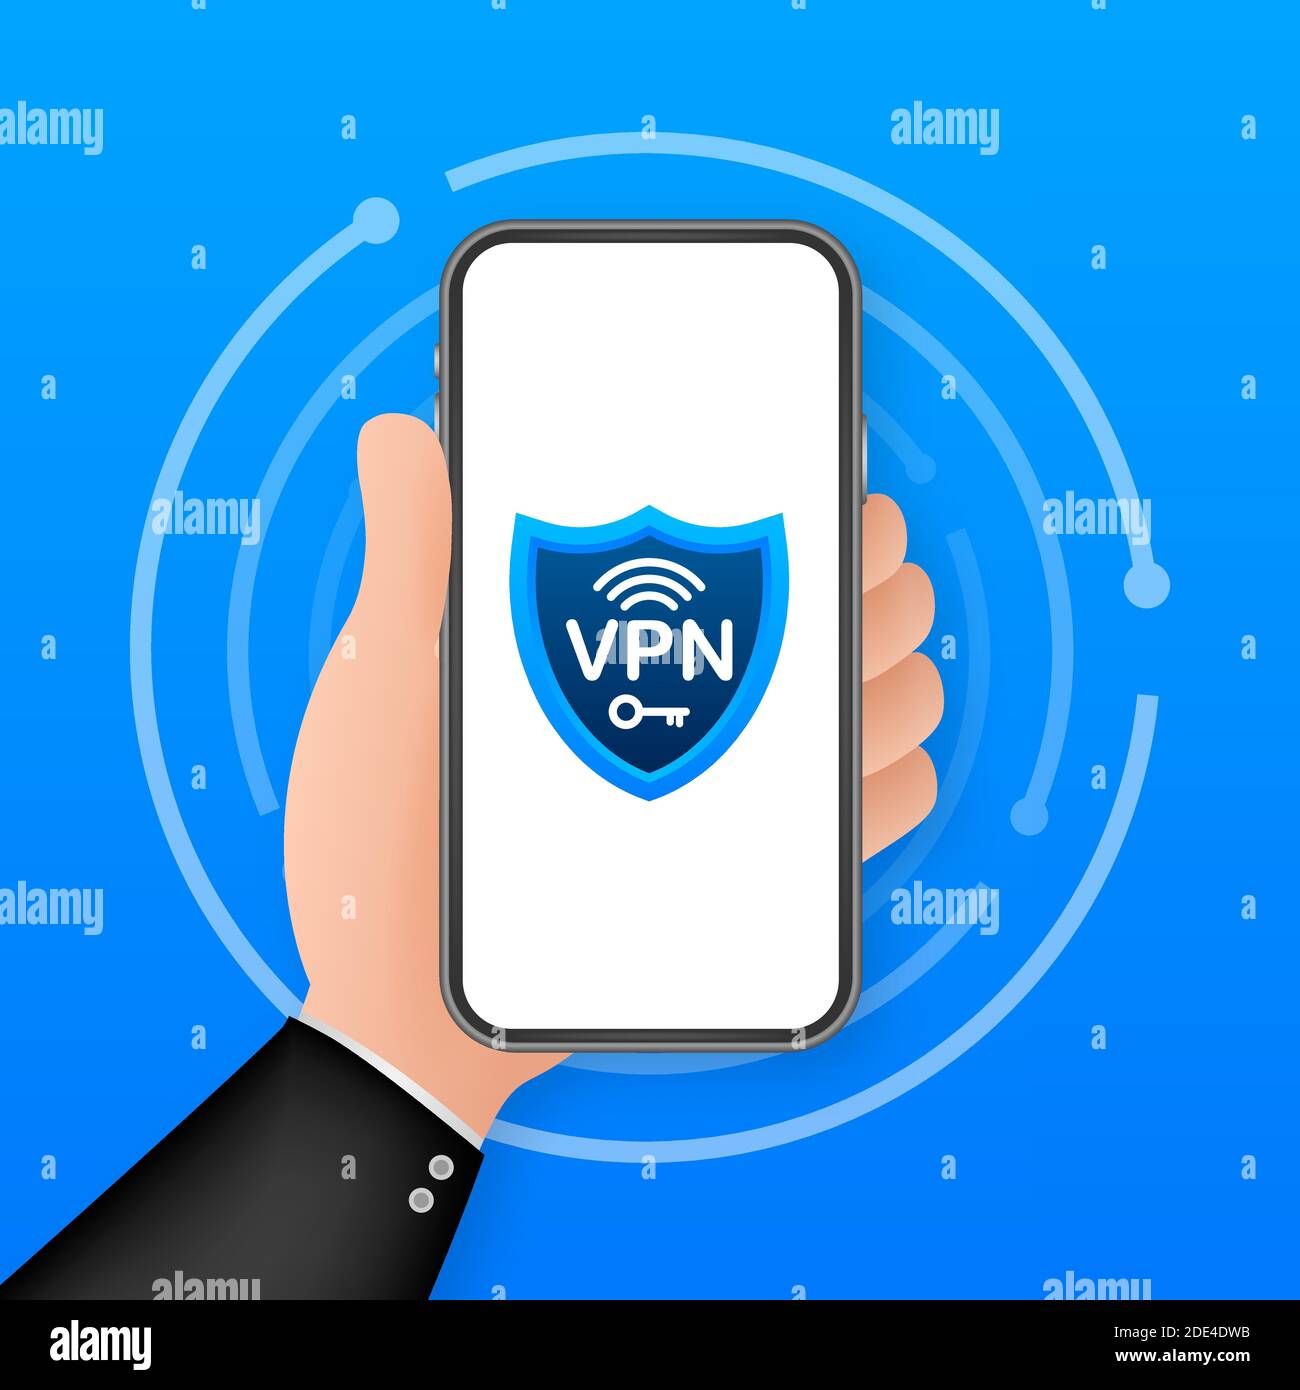 Sicheres VPN-Verbindungskonzept. Übersicht über die Konnektivität des virtuellen privaten Netzwerks. Vektorgrafik. Stock Vektor